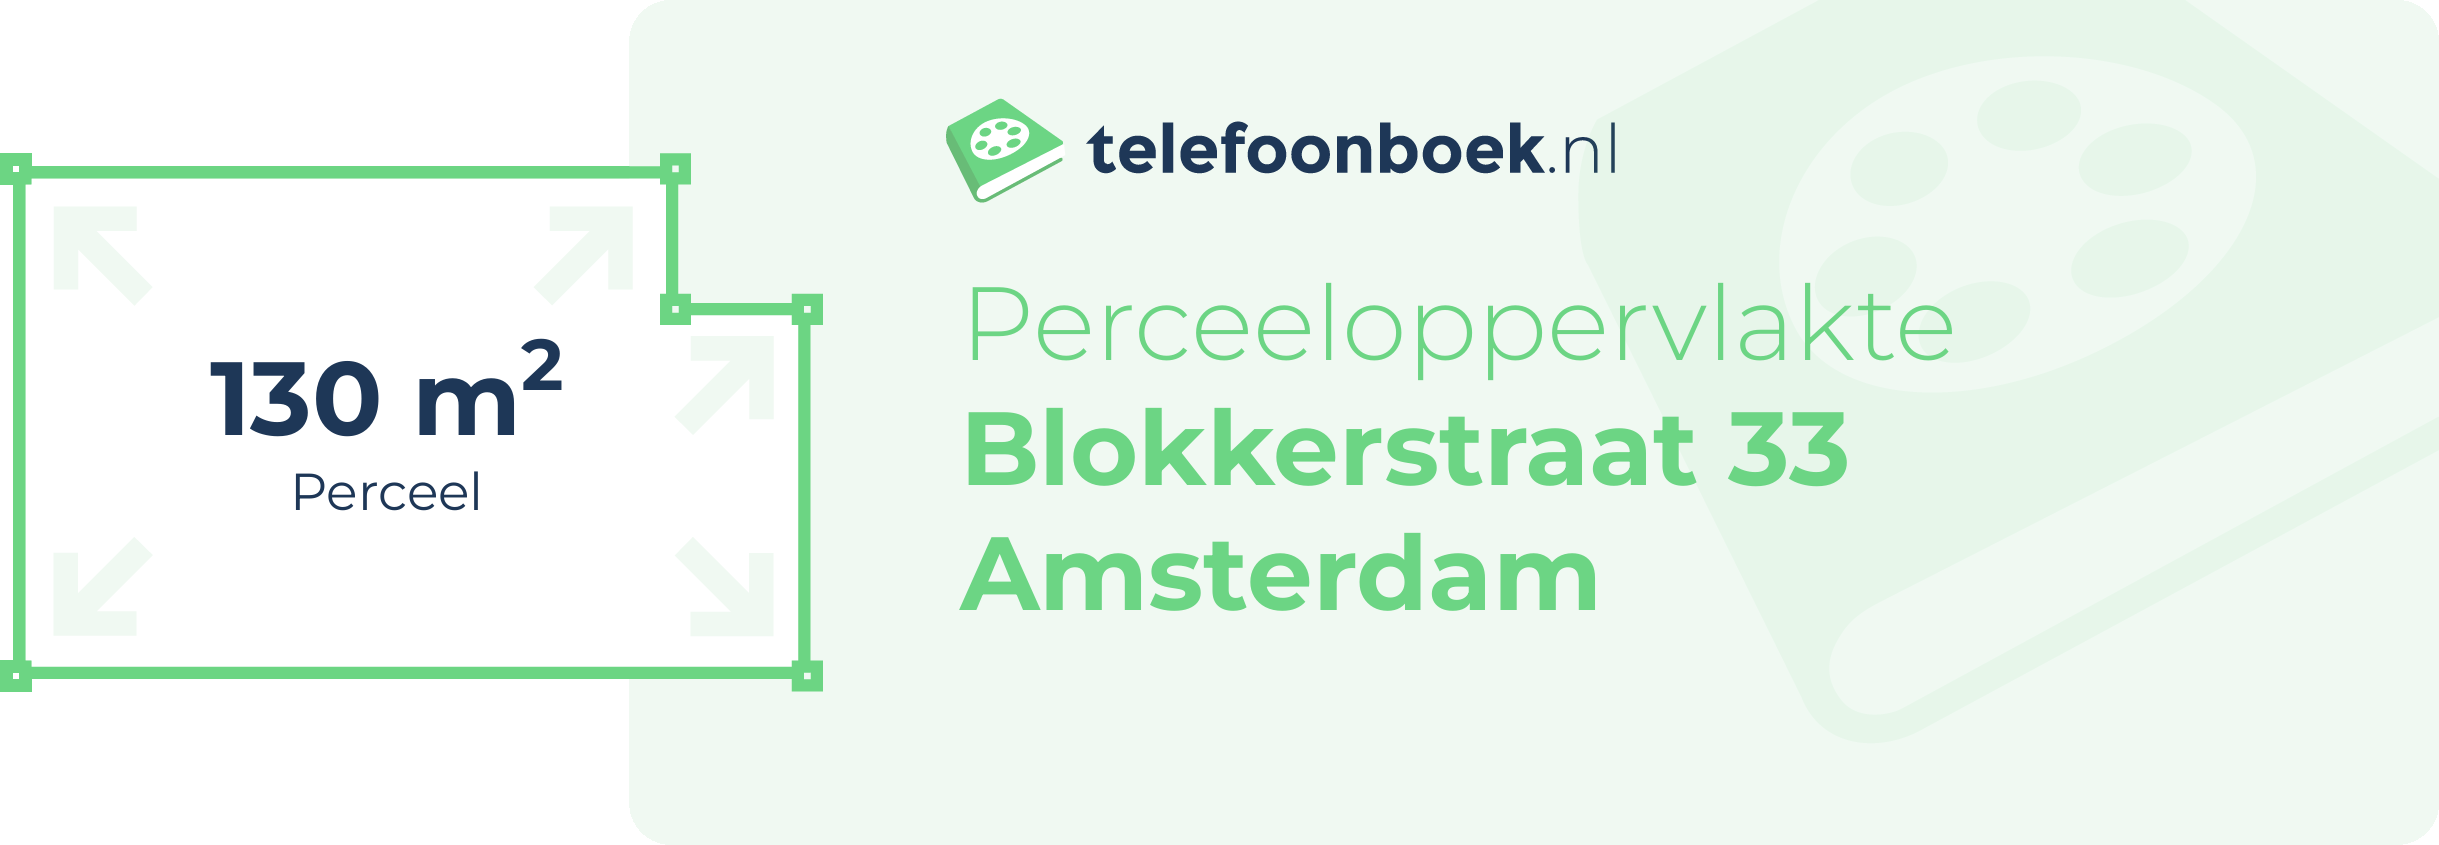 Perceeloppervlakte Blokkerstraat 33 Amsterdam